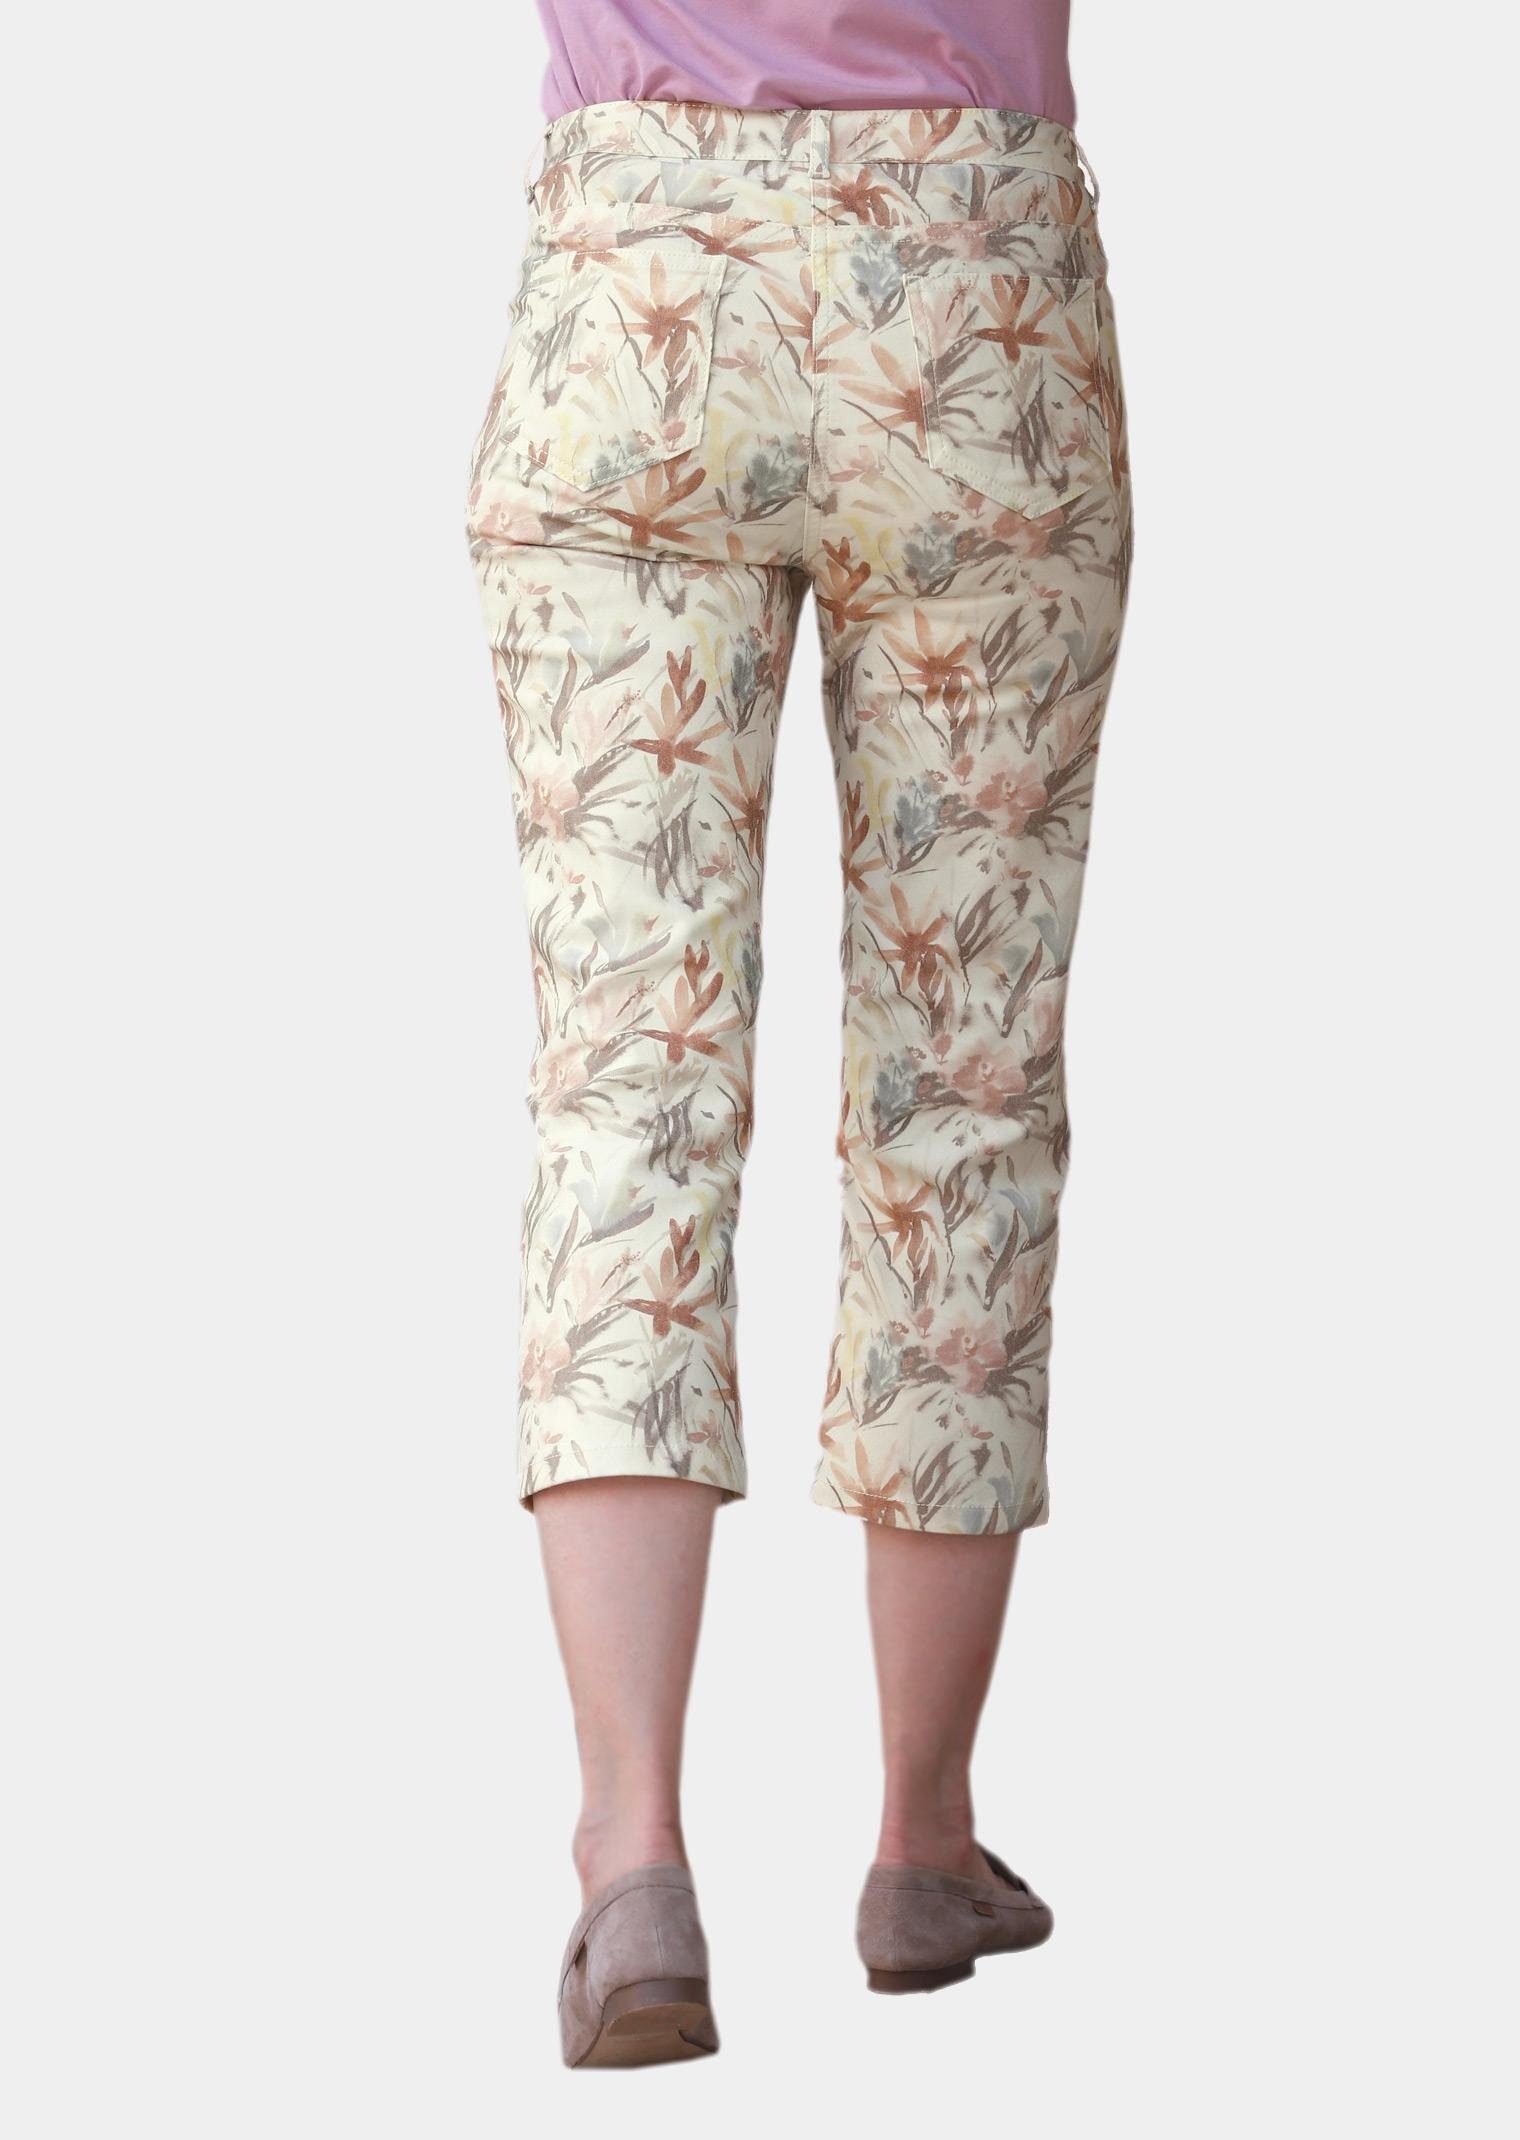 Damen Hosen GOLDNER Stoffhose Druckhose mit ausgefallenem Blumenmuster